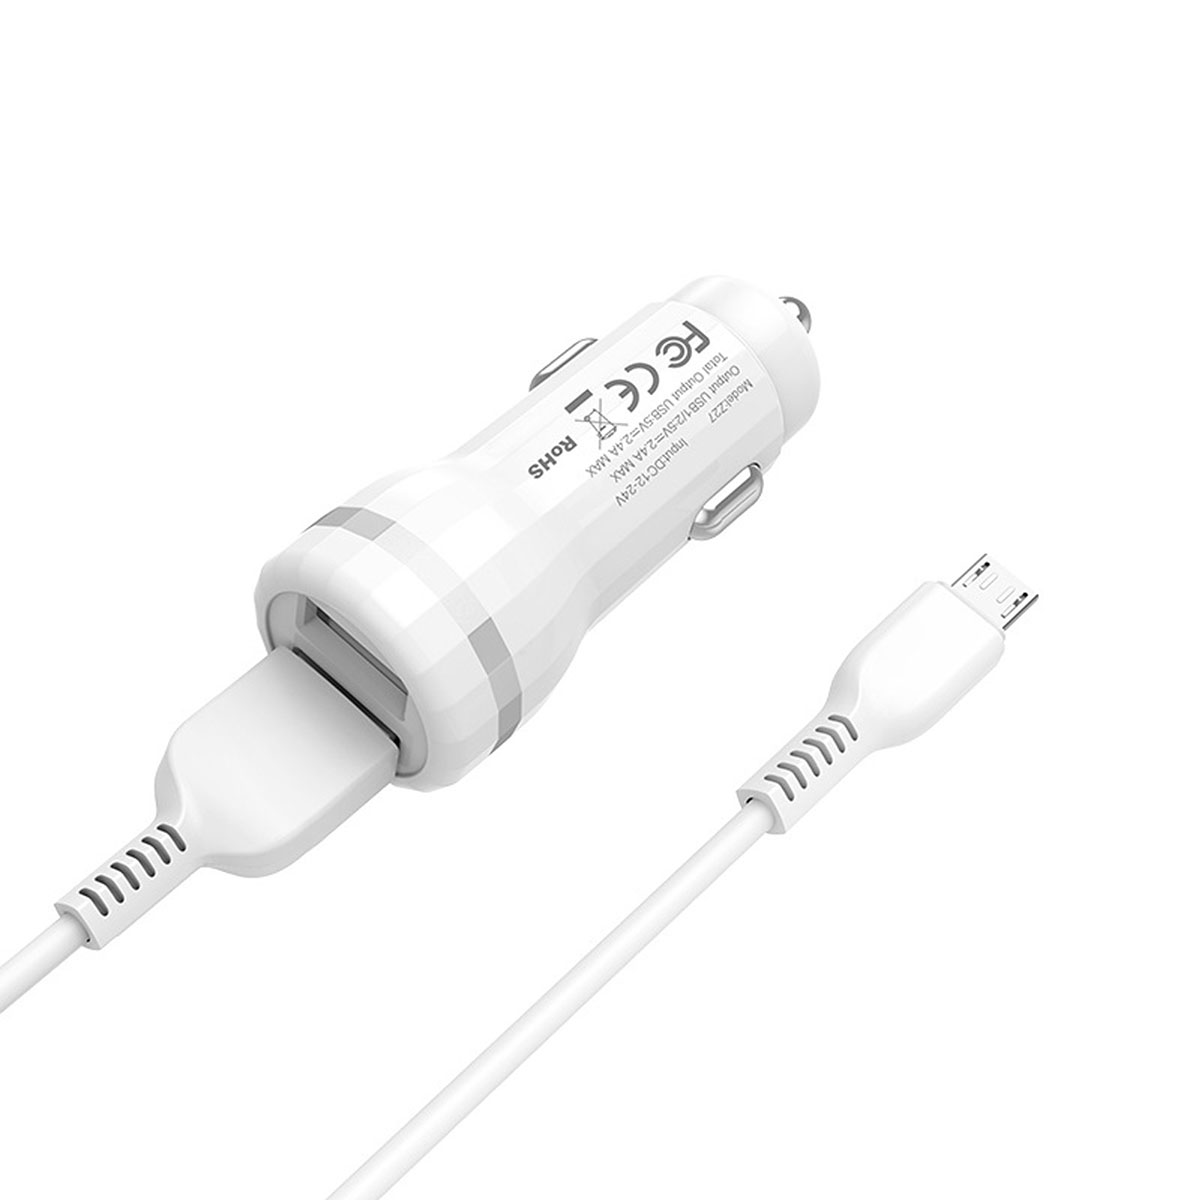 АЗУ (Автомобильное зарядное устройство) 2 порта USB, HOCO Z27 Staunch, с кабелем Micro USB X20, 1 метр, цвет белый